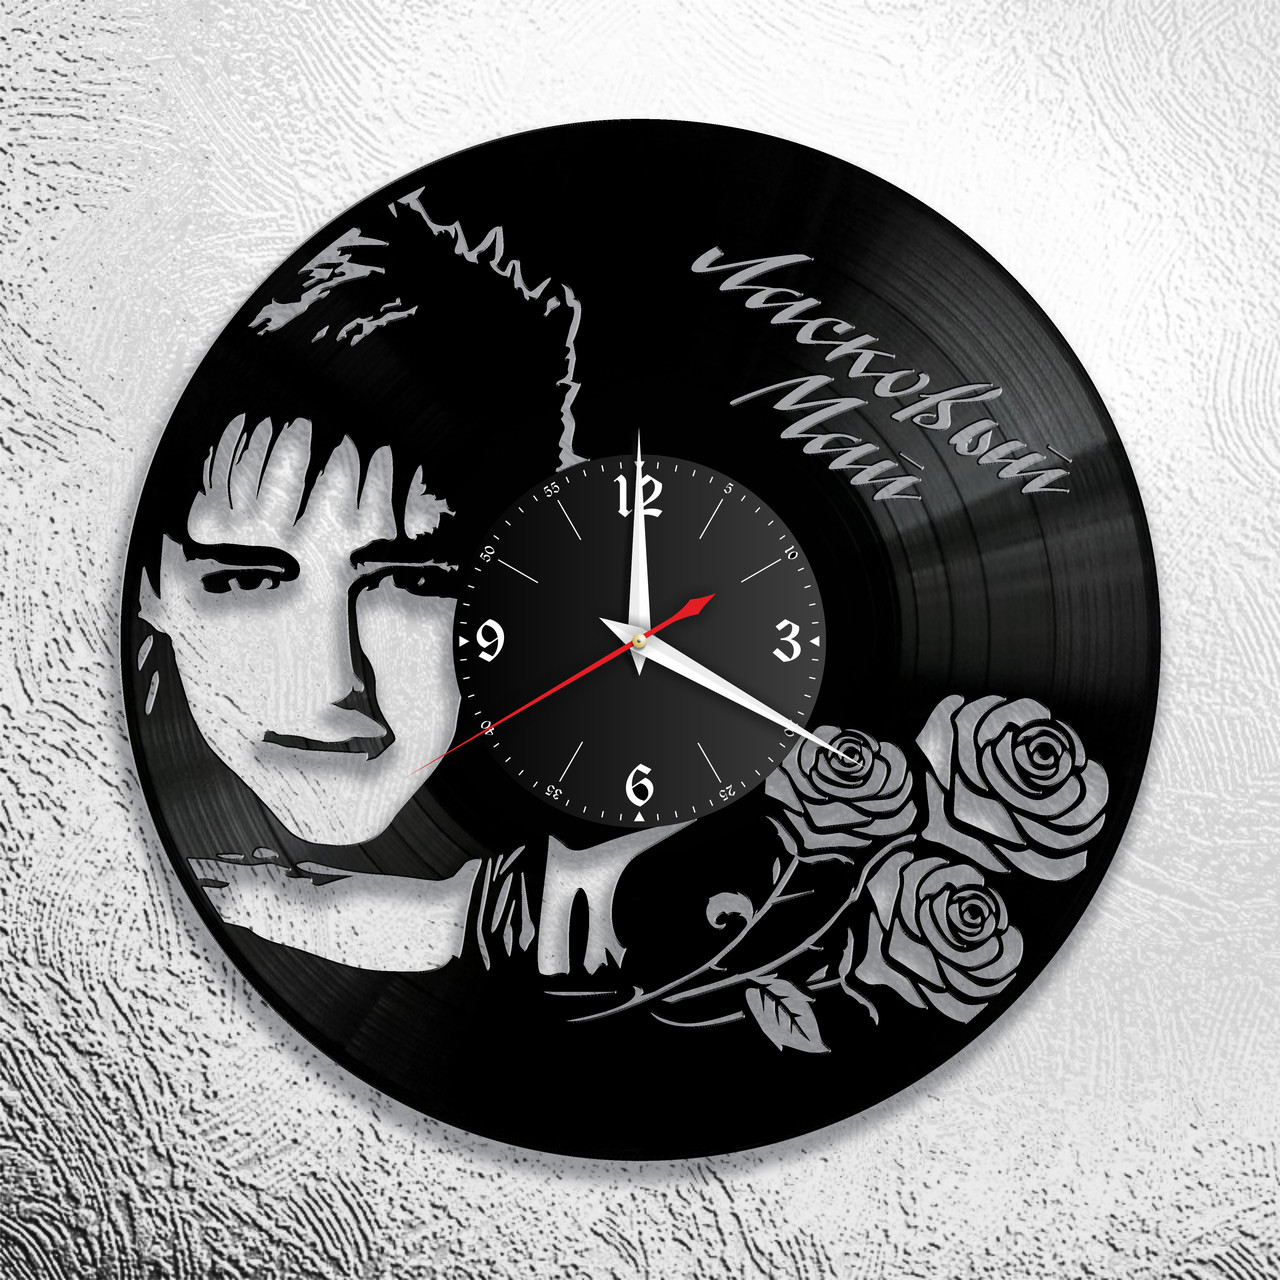 Часы из виниловой пластинки "Ласковый май" версия 1, фото 1